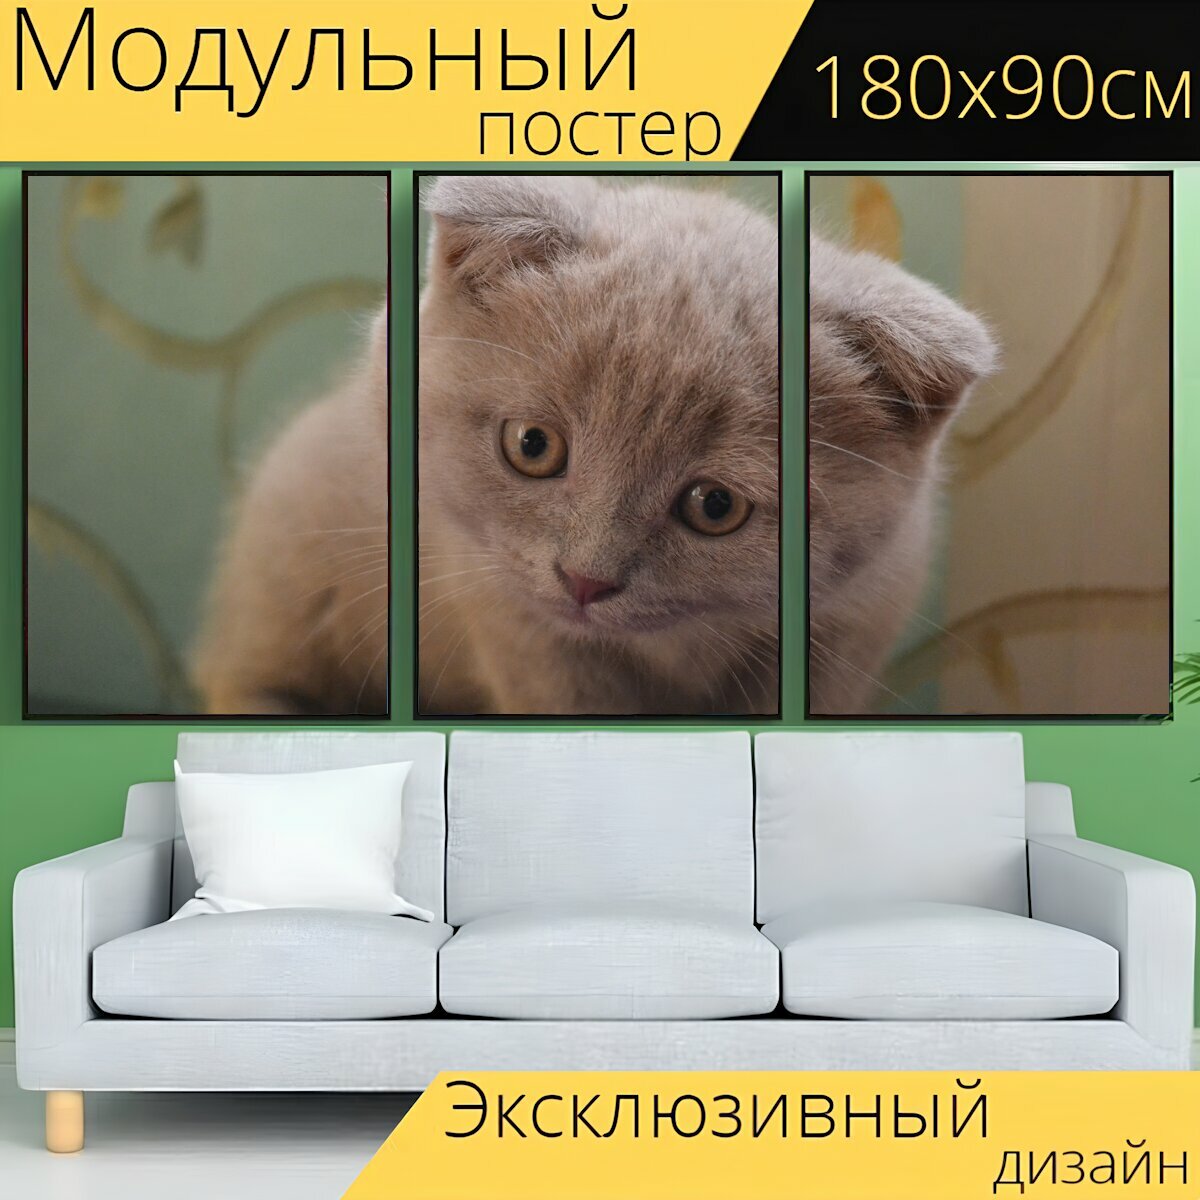 Модульный постер "Кошка, китти, котенок" 180 x 90 см. для интерьера